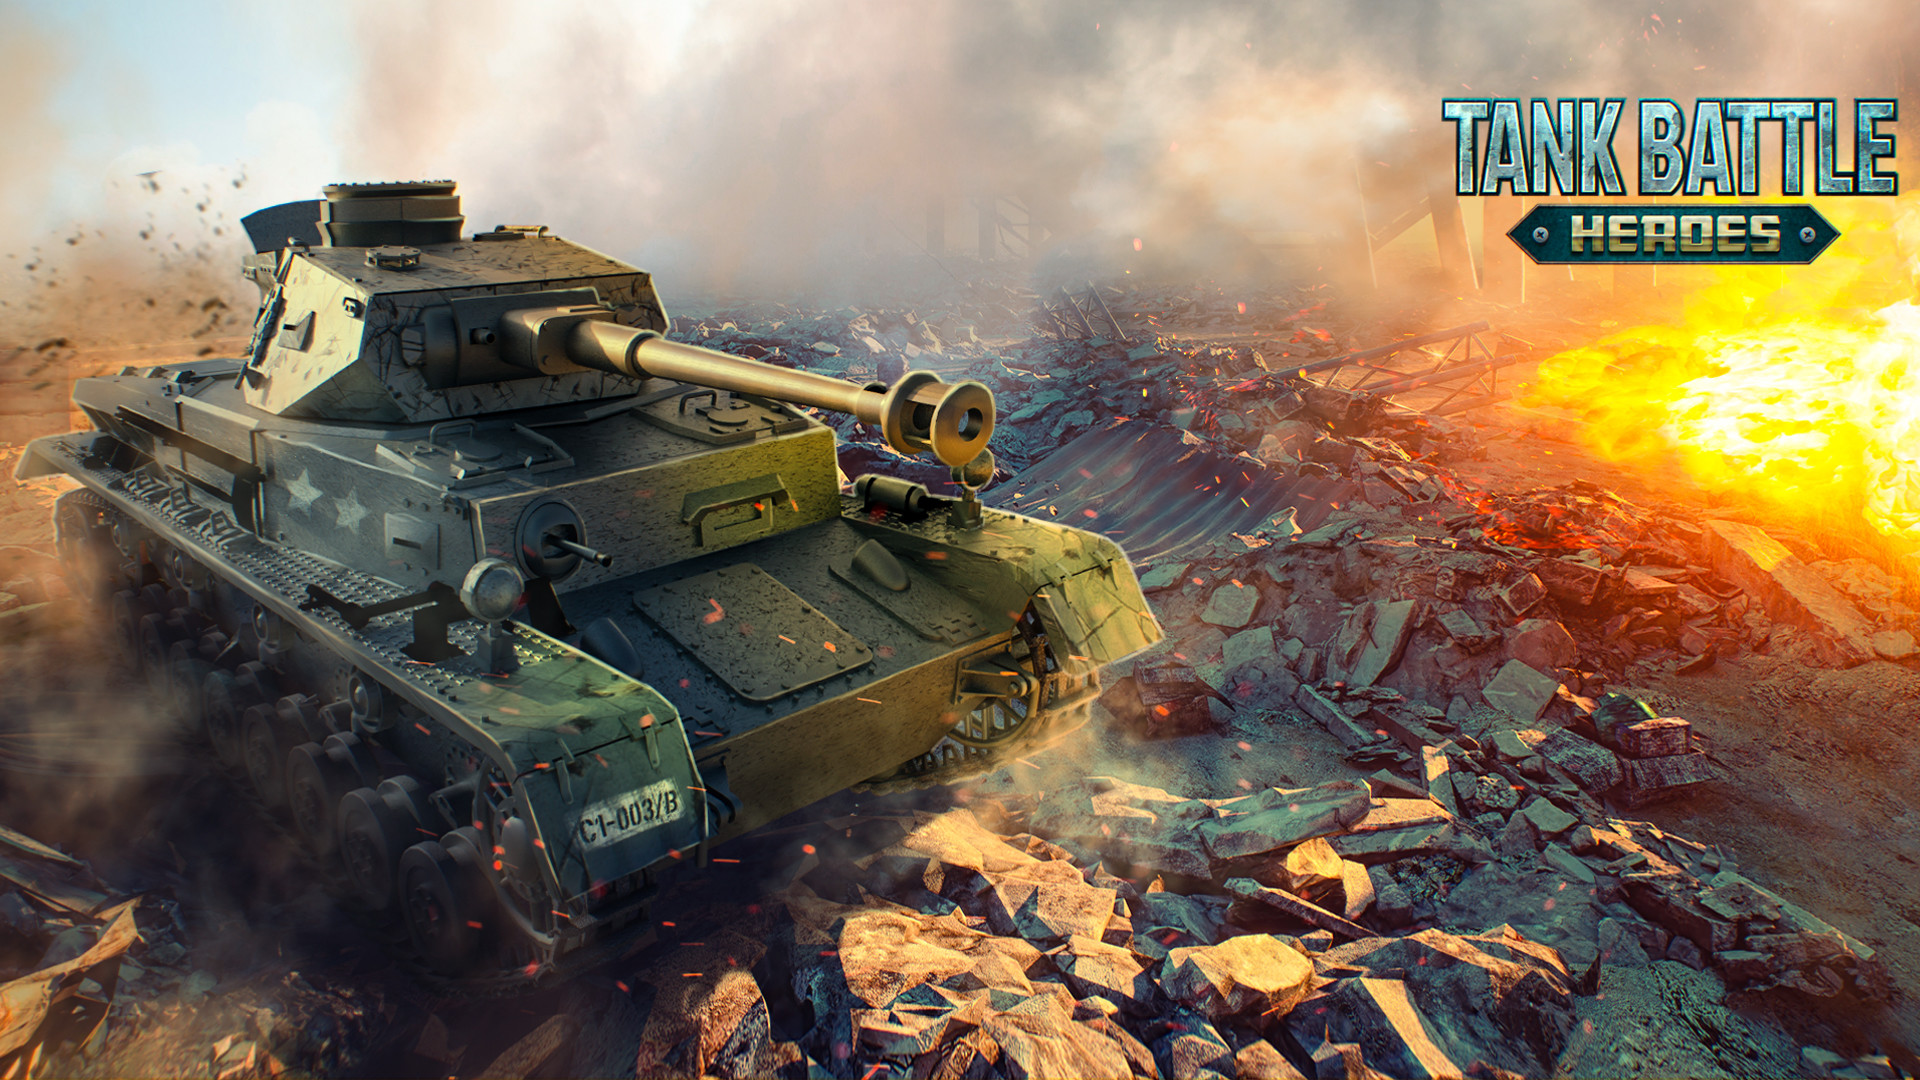 Tank Battle Heroes: Esports War Featured Screenshot #1